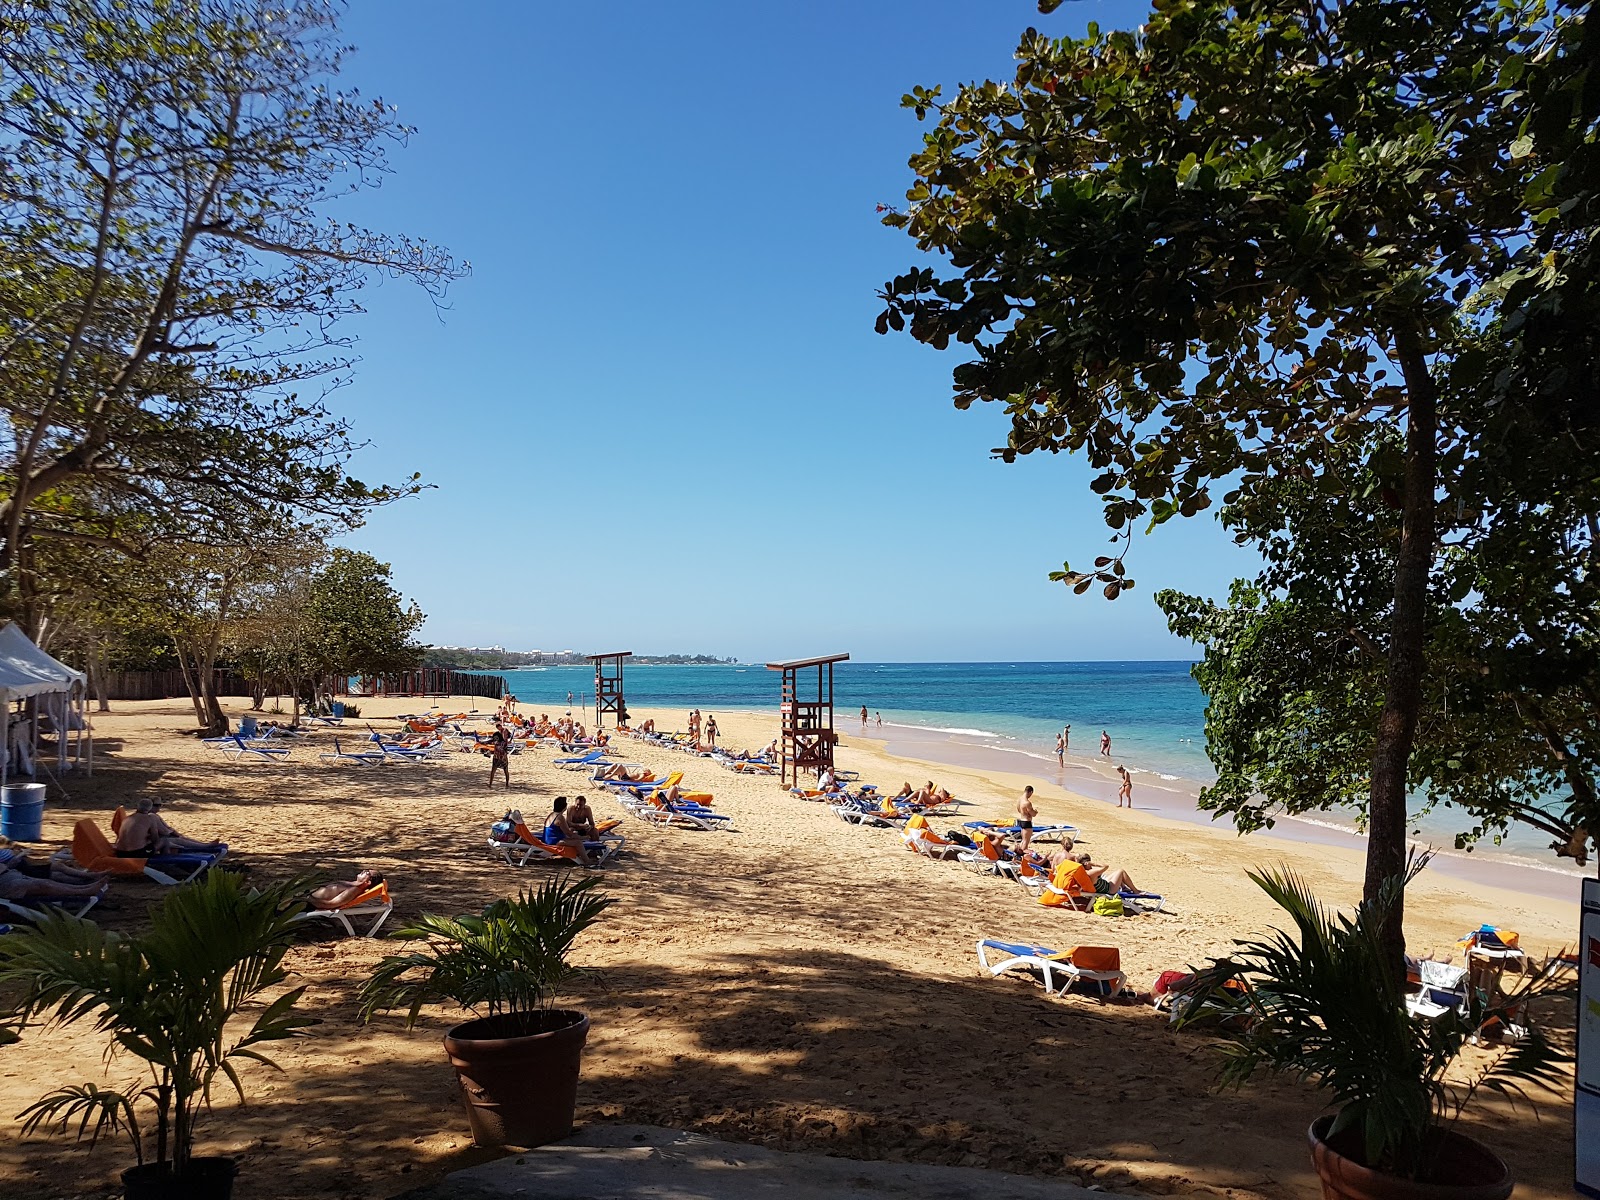 Zdjęcie Pearly beach - popularne miejsce wśród znawców relaksu